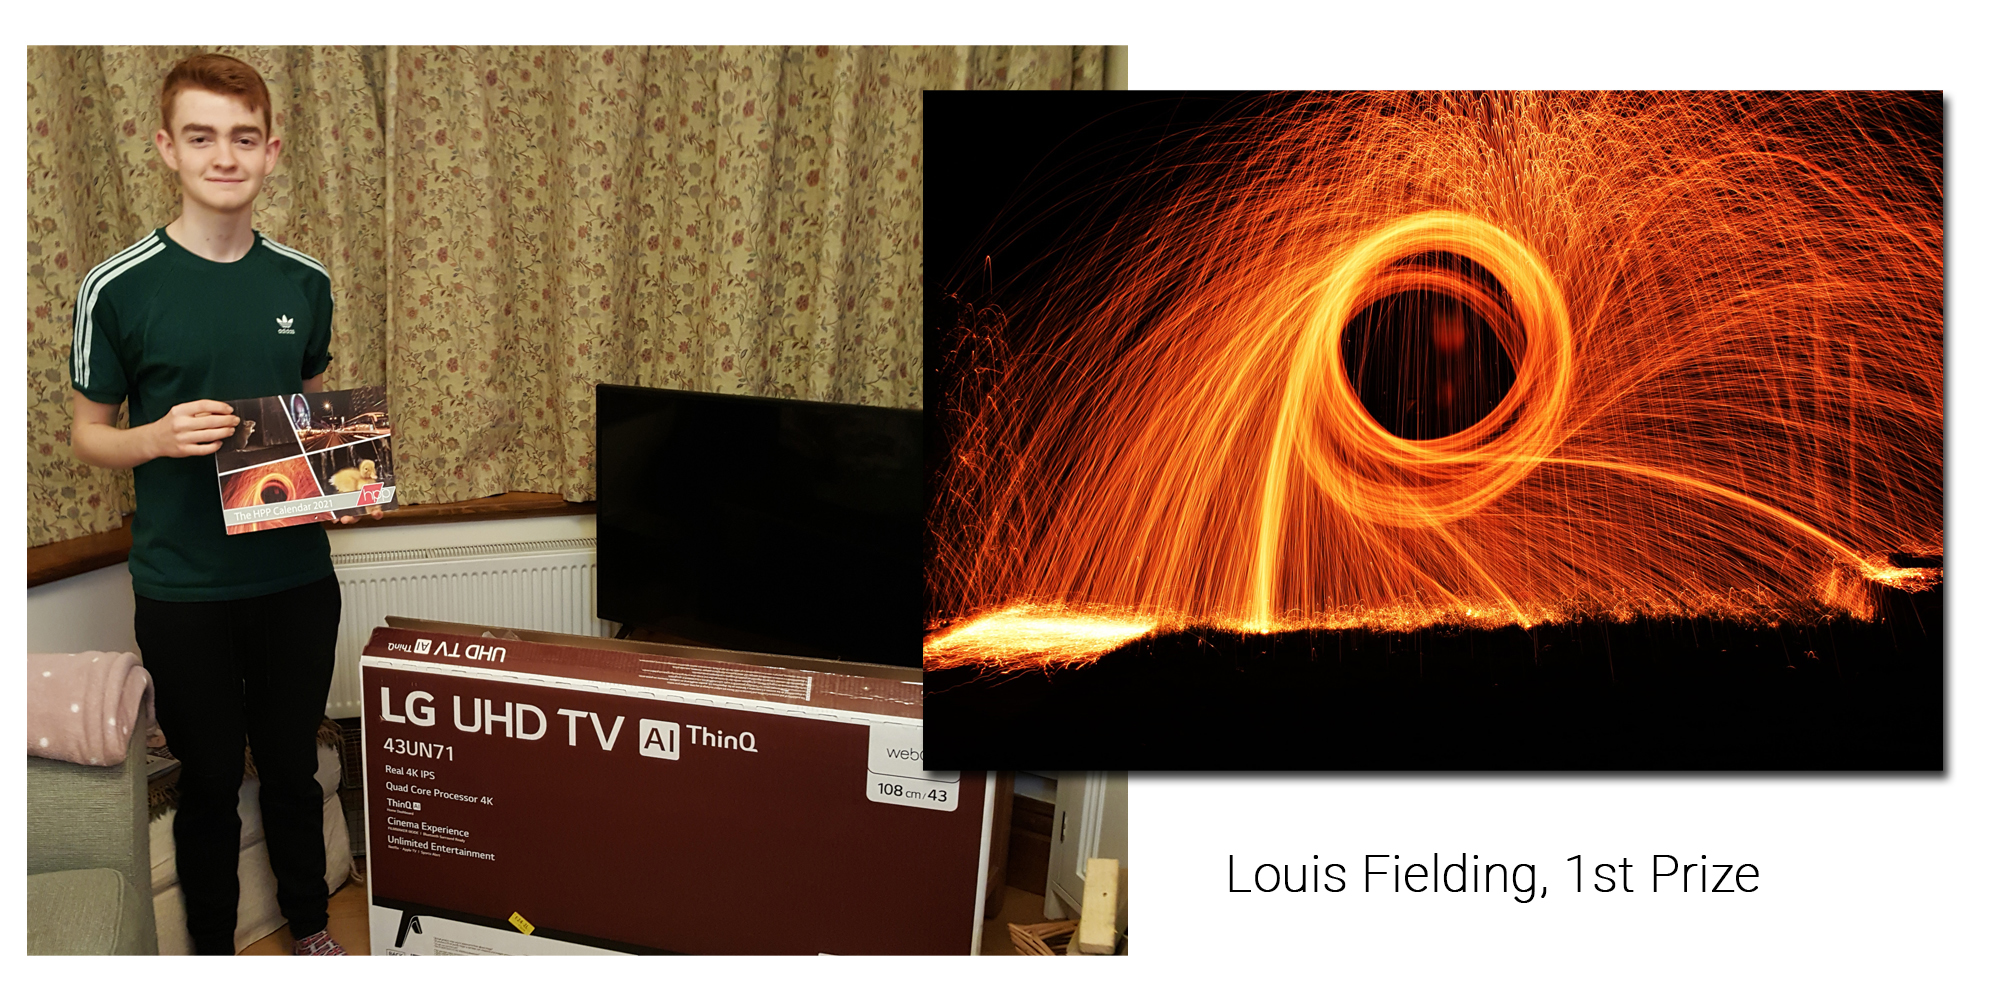 Louis Fielding, 1st Prize WinnerDescription of image